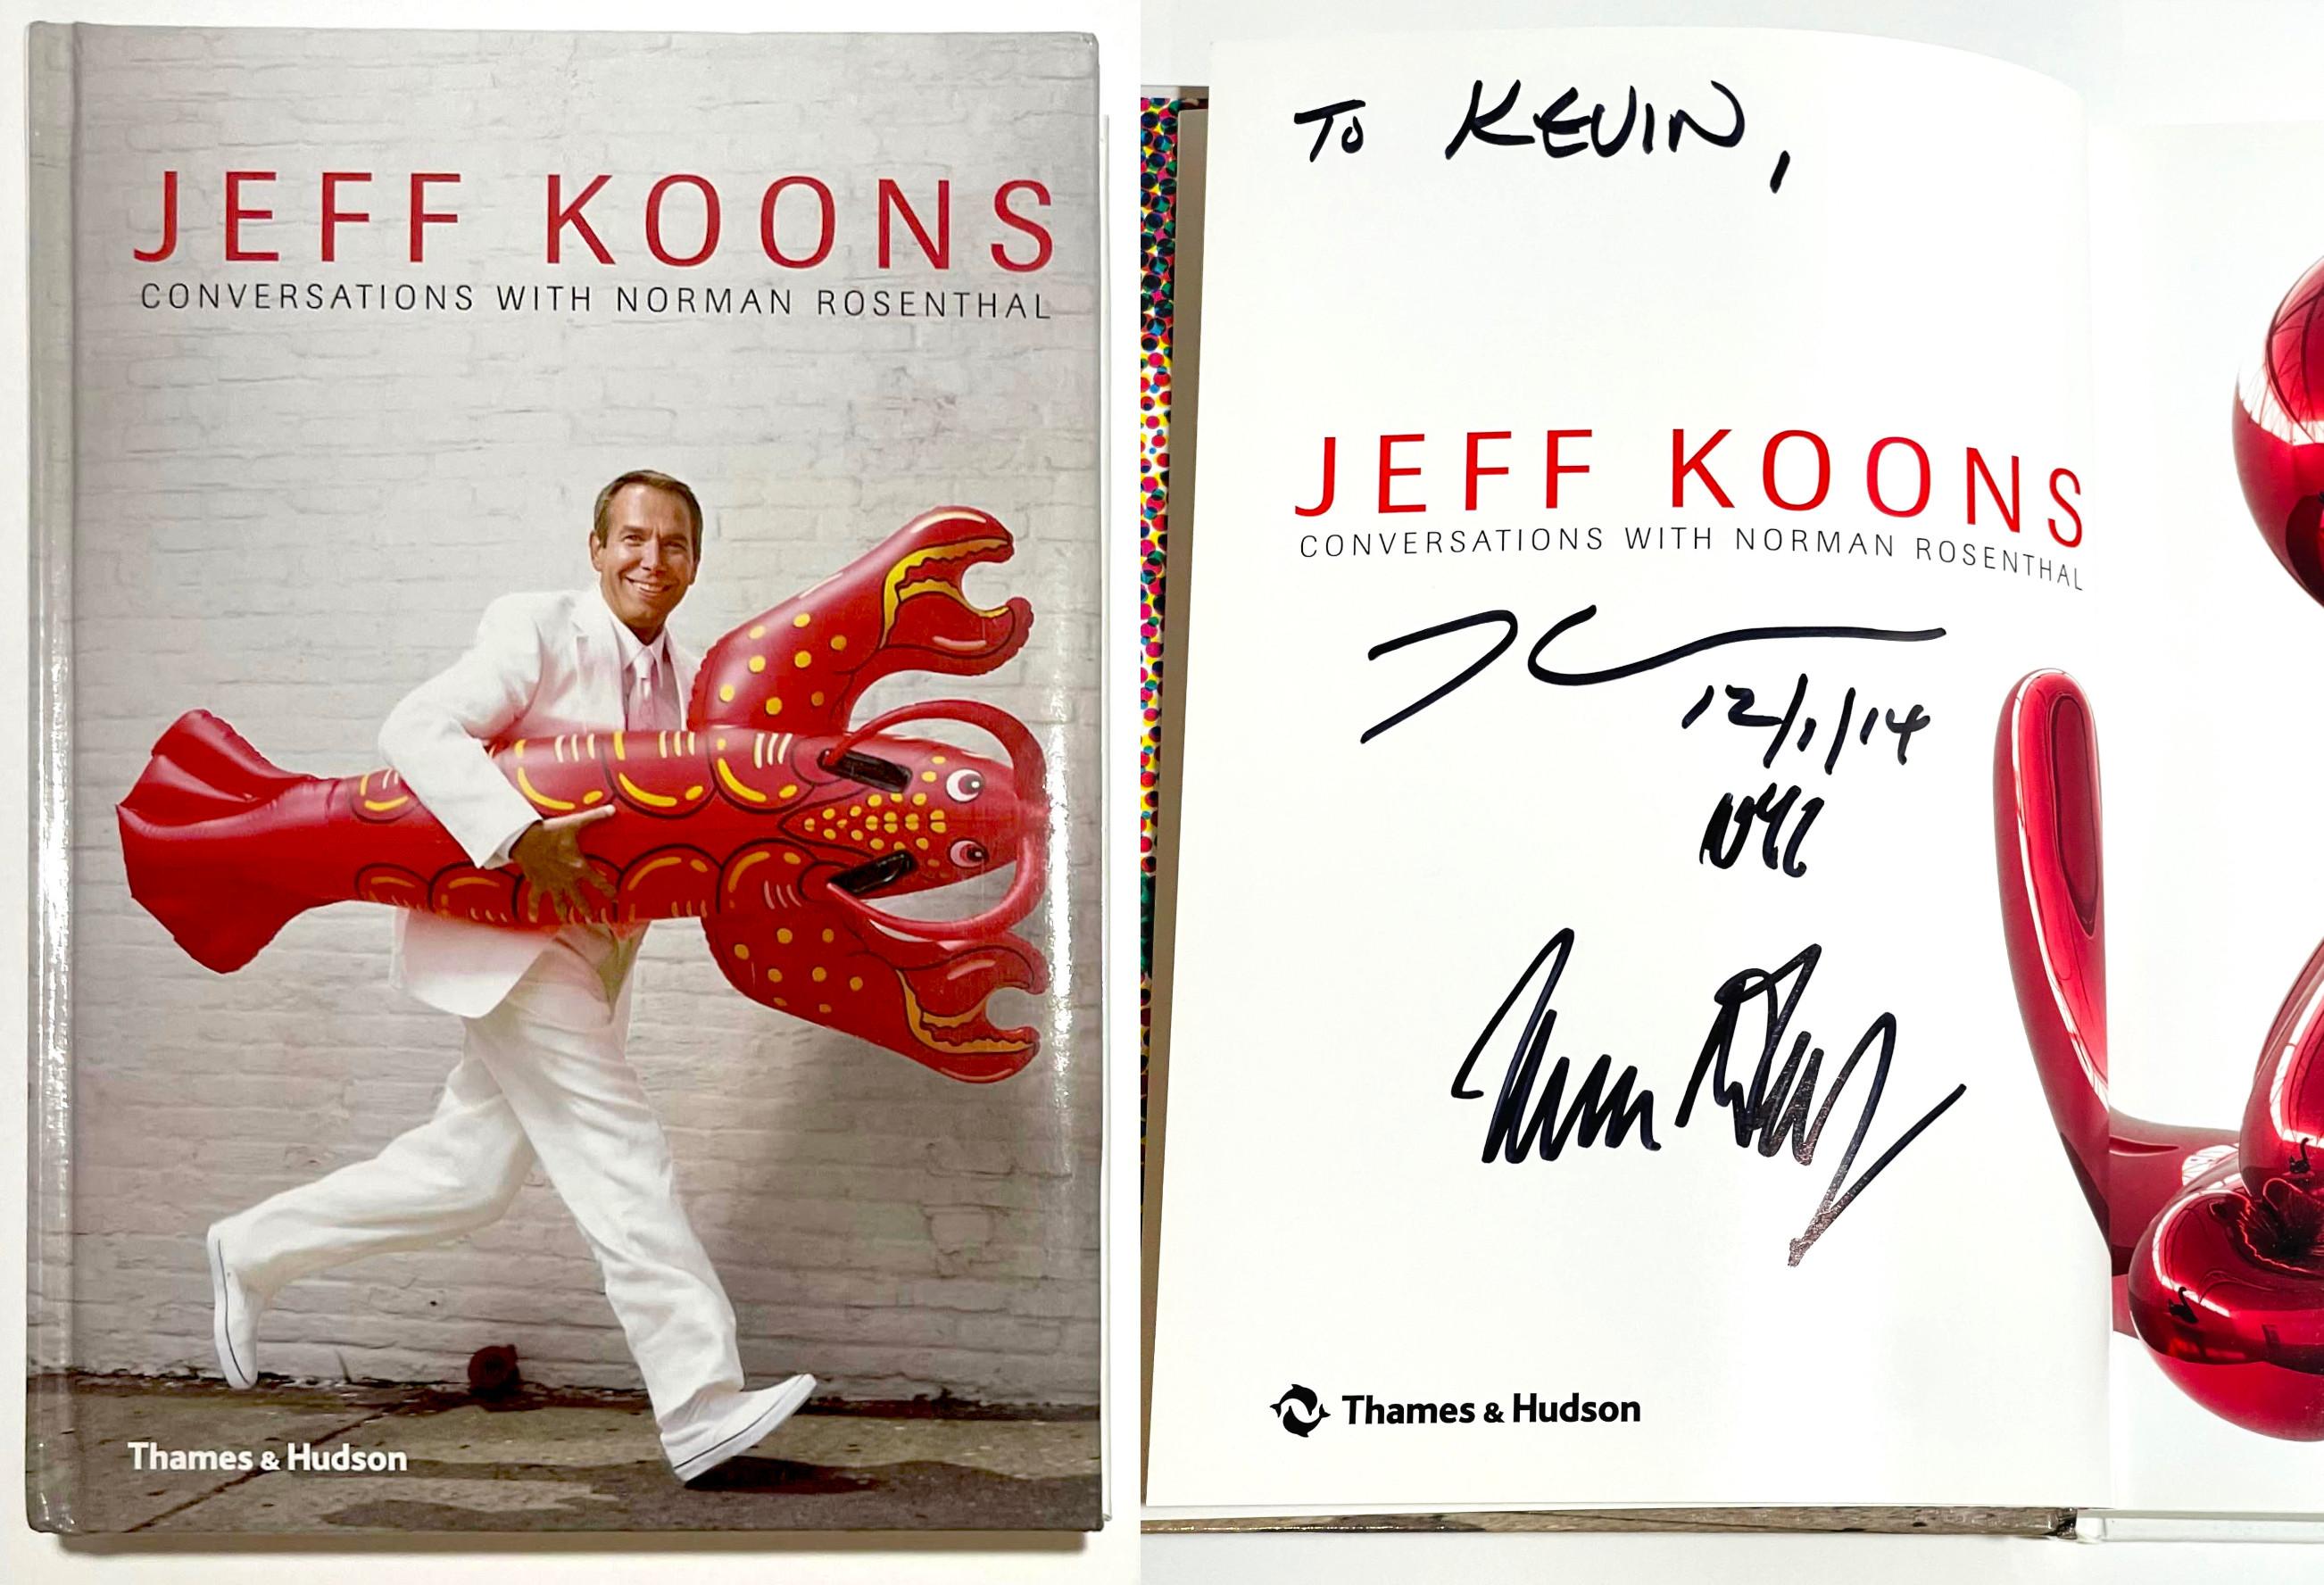 Jeff Koons Conversations with Norman Rosenthal (handsigniert und beschriftet von BEIDEN, Jeff Koons und Norman Rosenthal), 2014
Gebundene Monographie (handsigniert, datiert und beschriftet)
Handsigniert, datiert und beschriftet von Jeff Koons UND